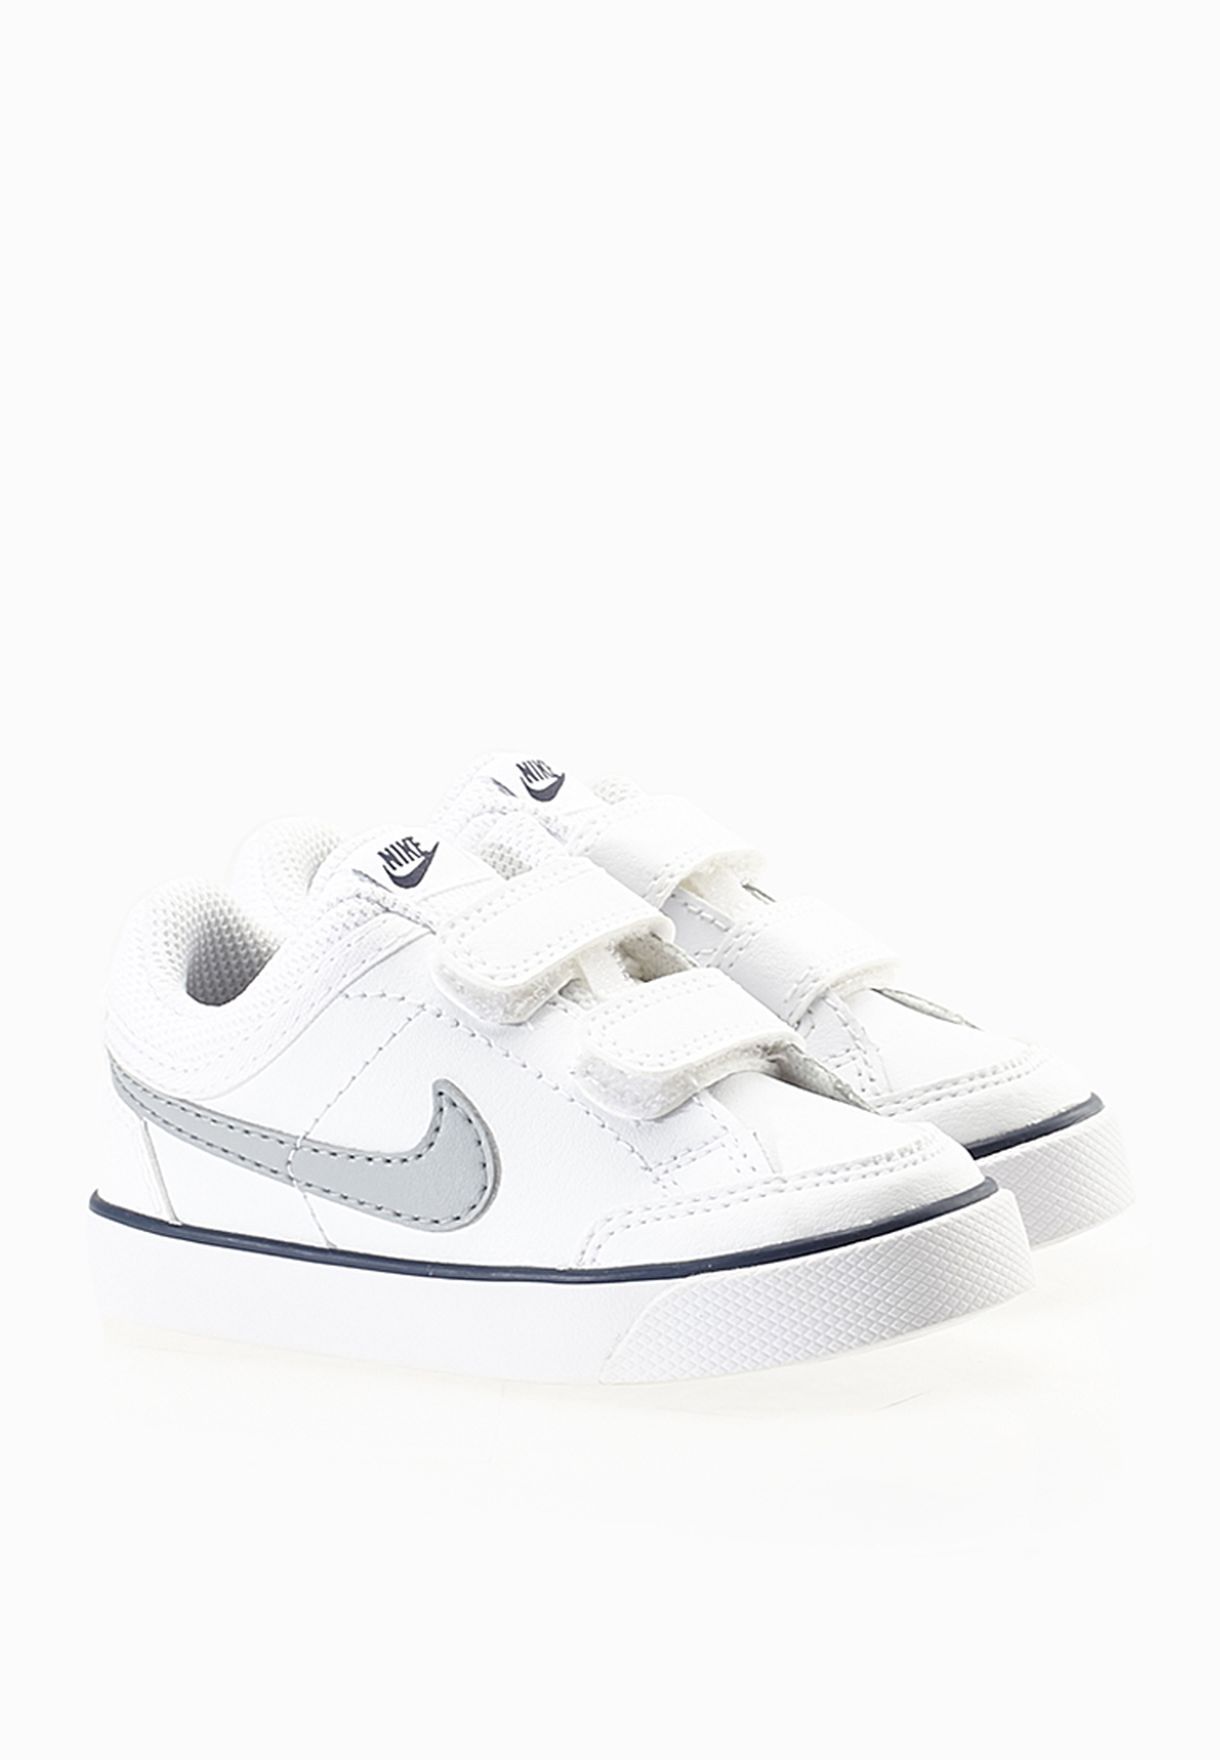 Buy Nike white Capri 3 Ltr Infant for 